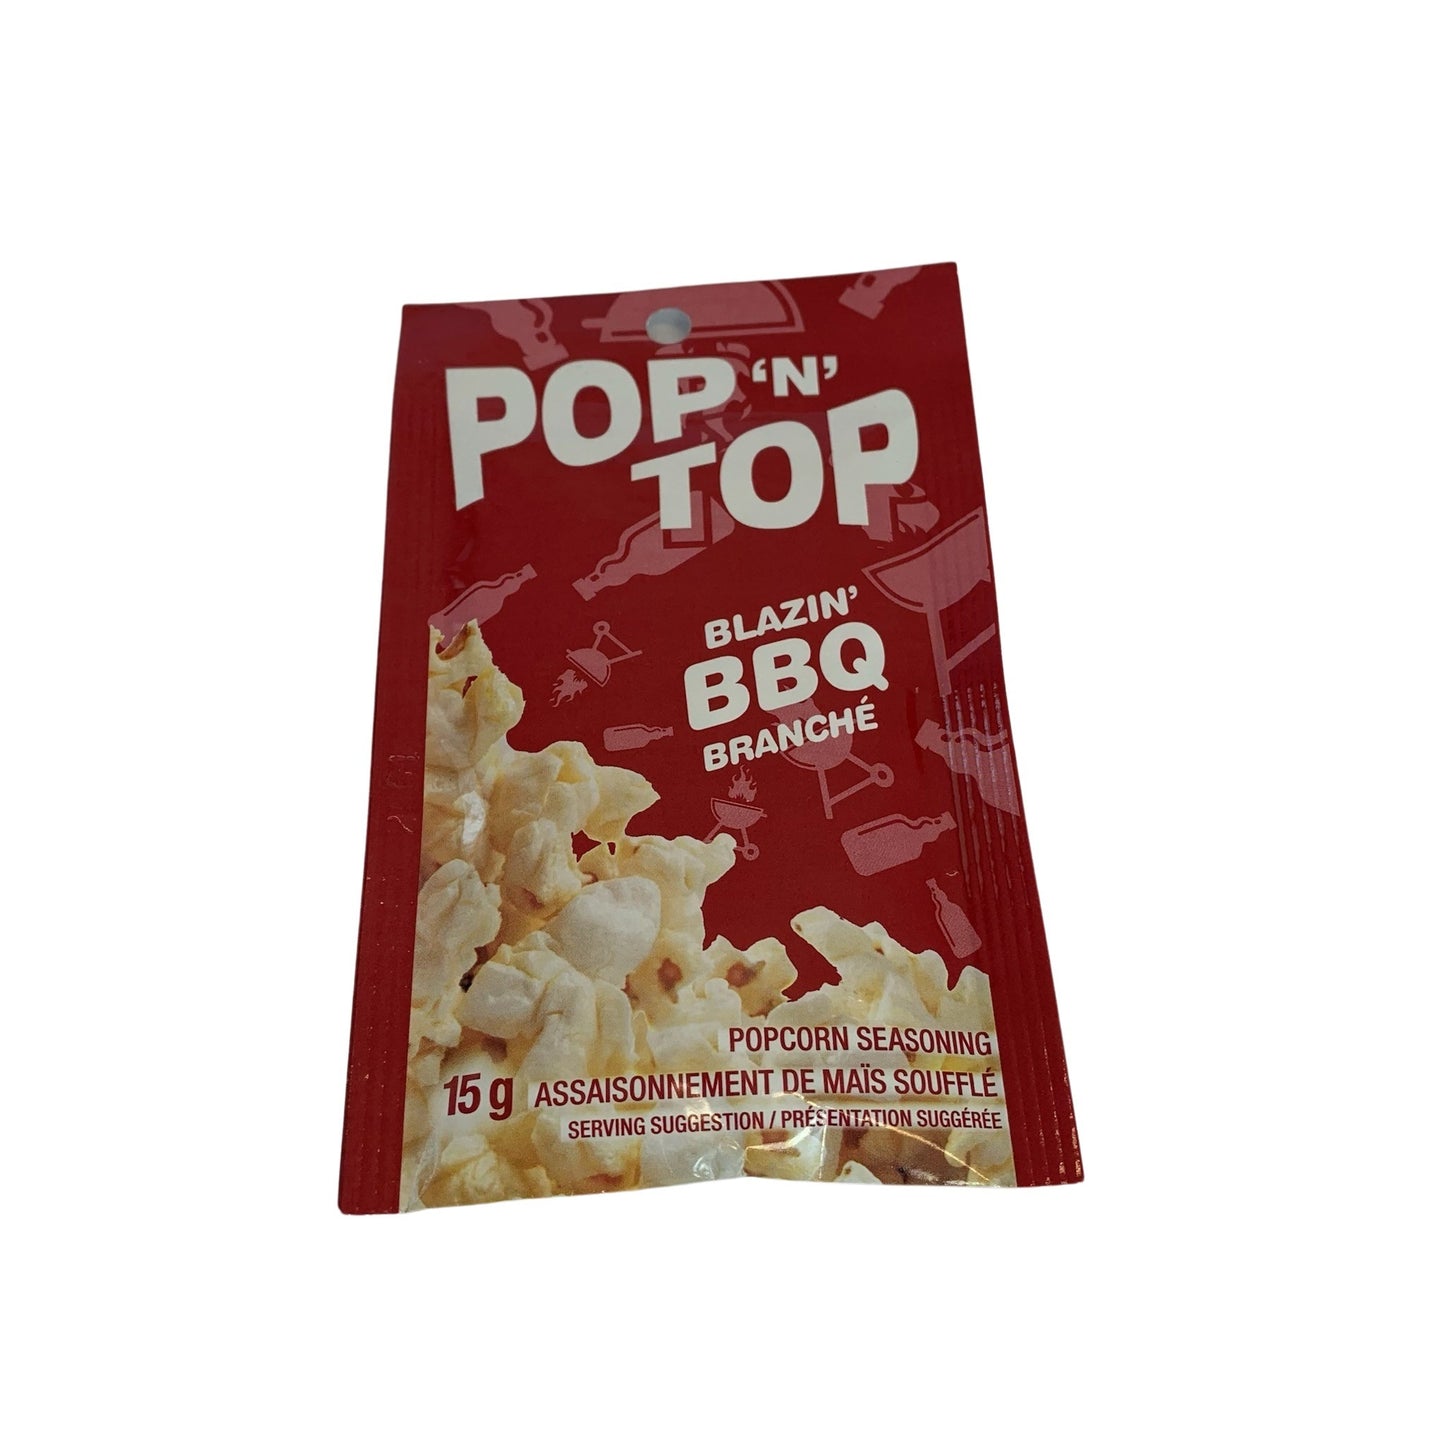 PopNTop Blazin' BBQ Popcorn Seasoning 15 g